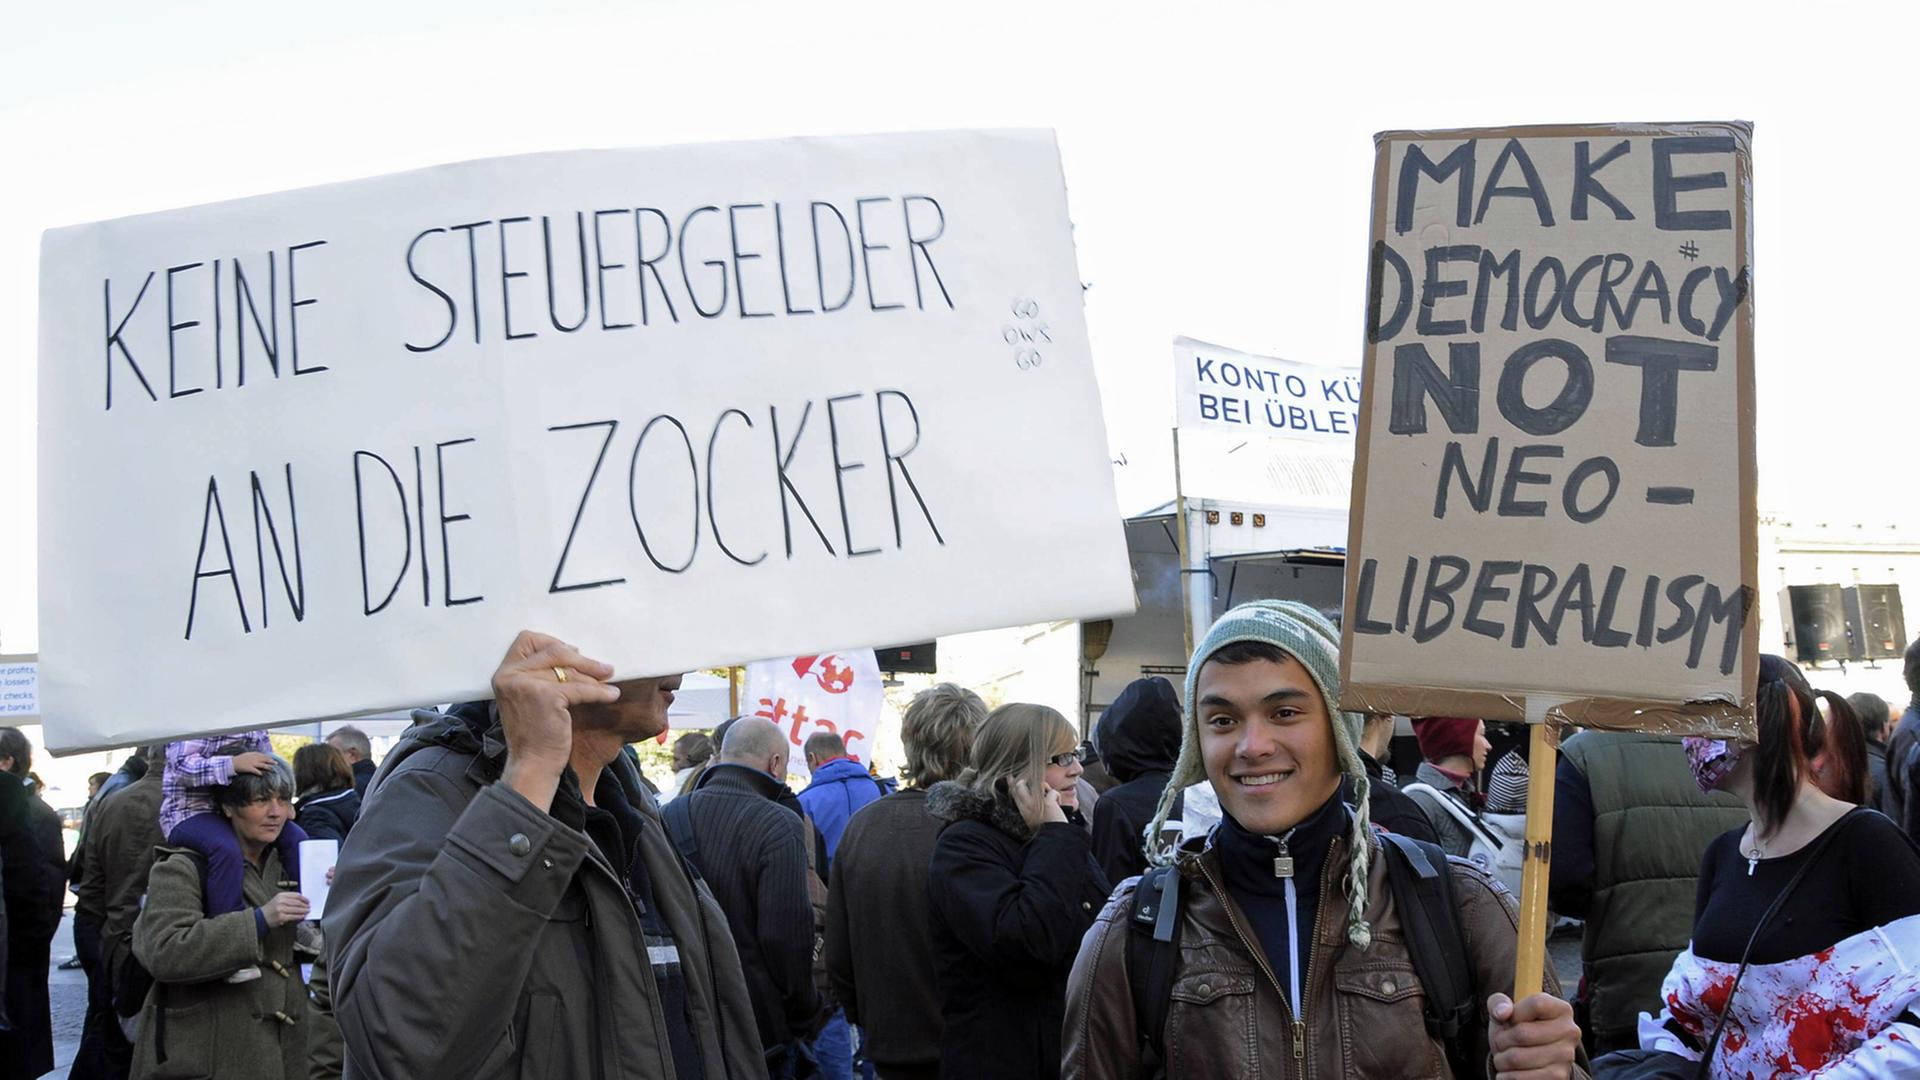 "Make Democracy not Neoliberalism" und "Keine Steuergelder an die Zocker" steht auf zwei Plakaten bei einer Demonstration gegen die Ungerechtigkeit des Finanzsystems und für mehr Demokratie in München im Oktober 2011